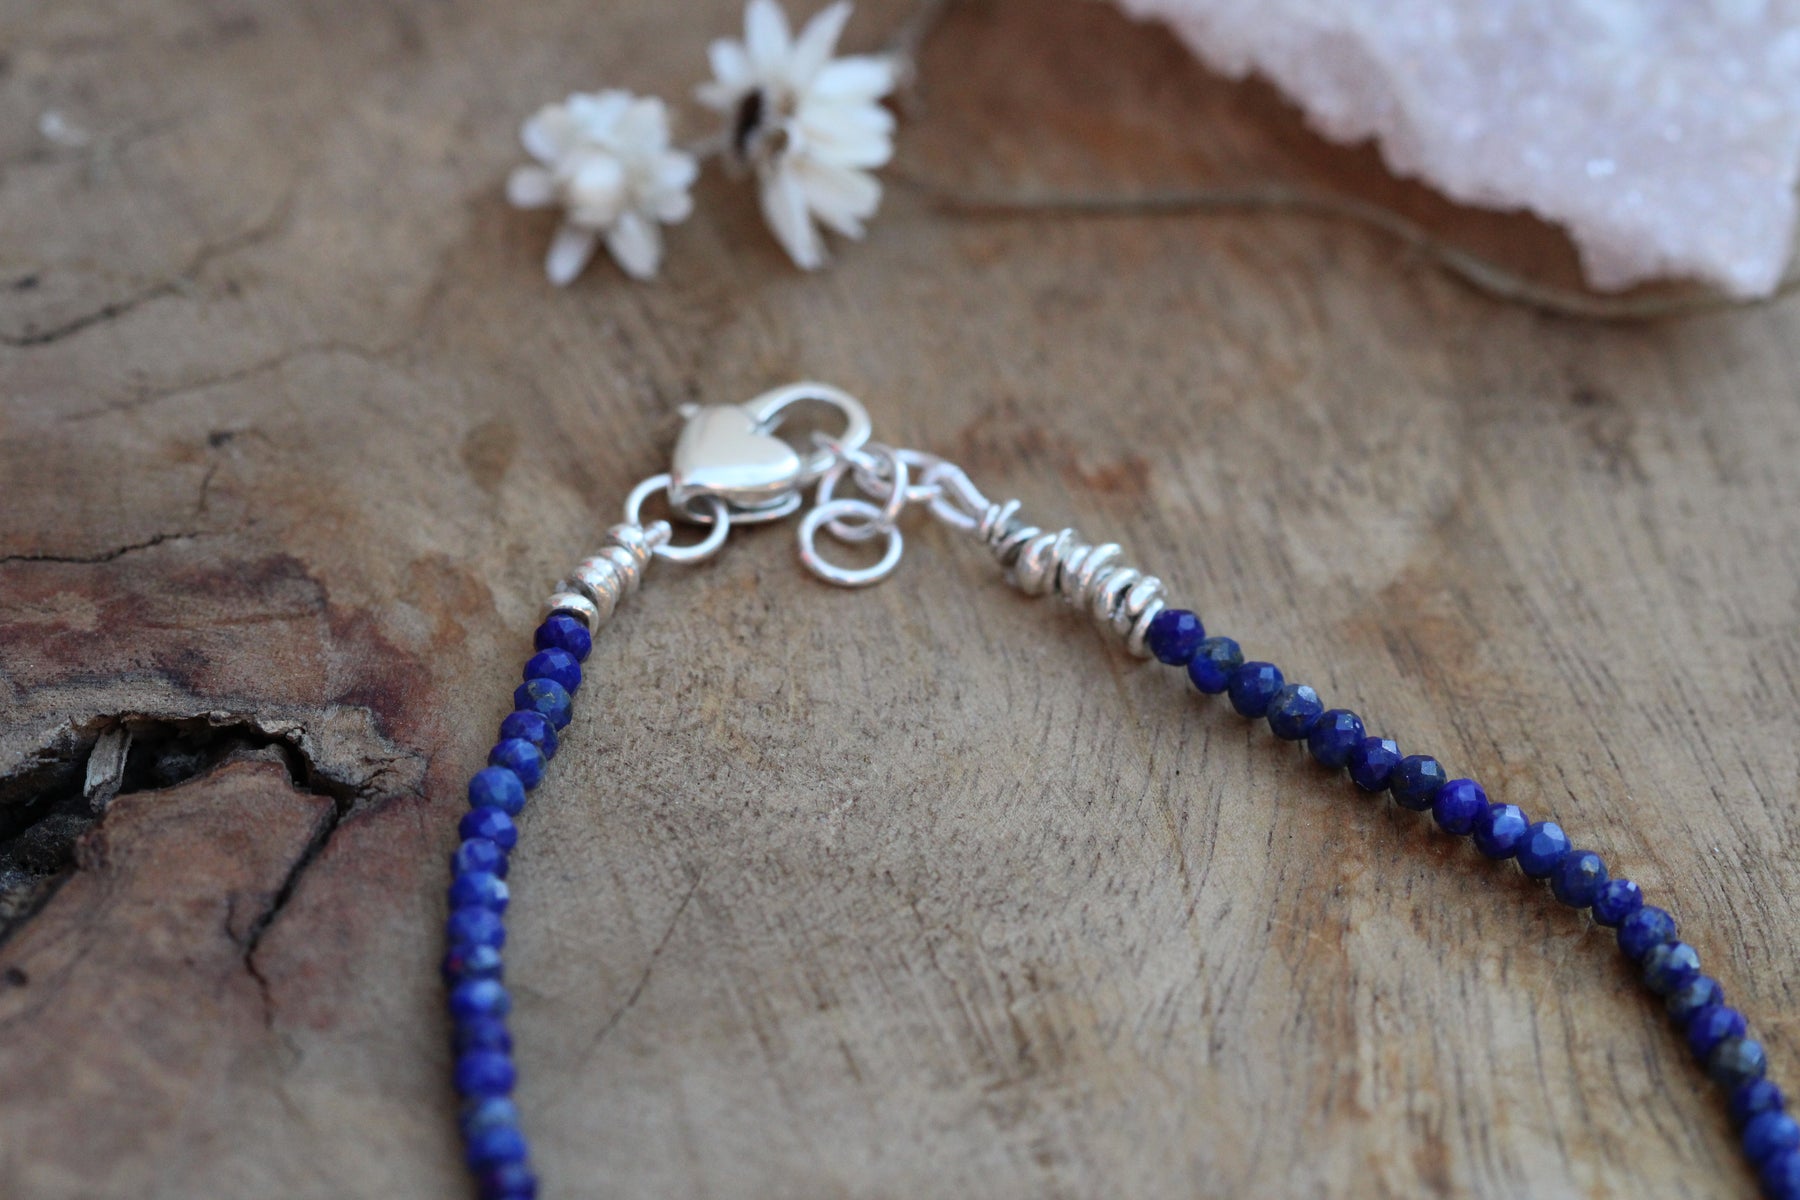 Gemstone Layering necklace lapis lazuli with amzonizte